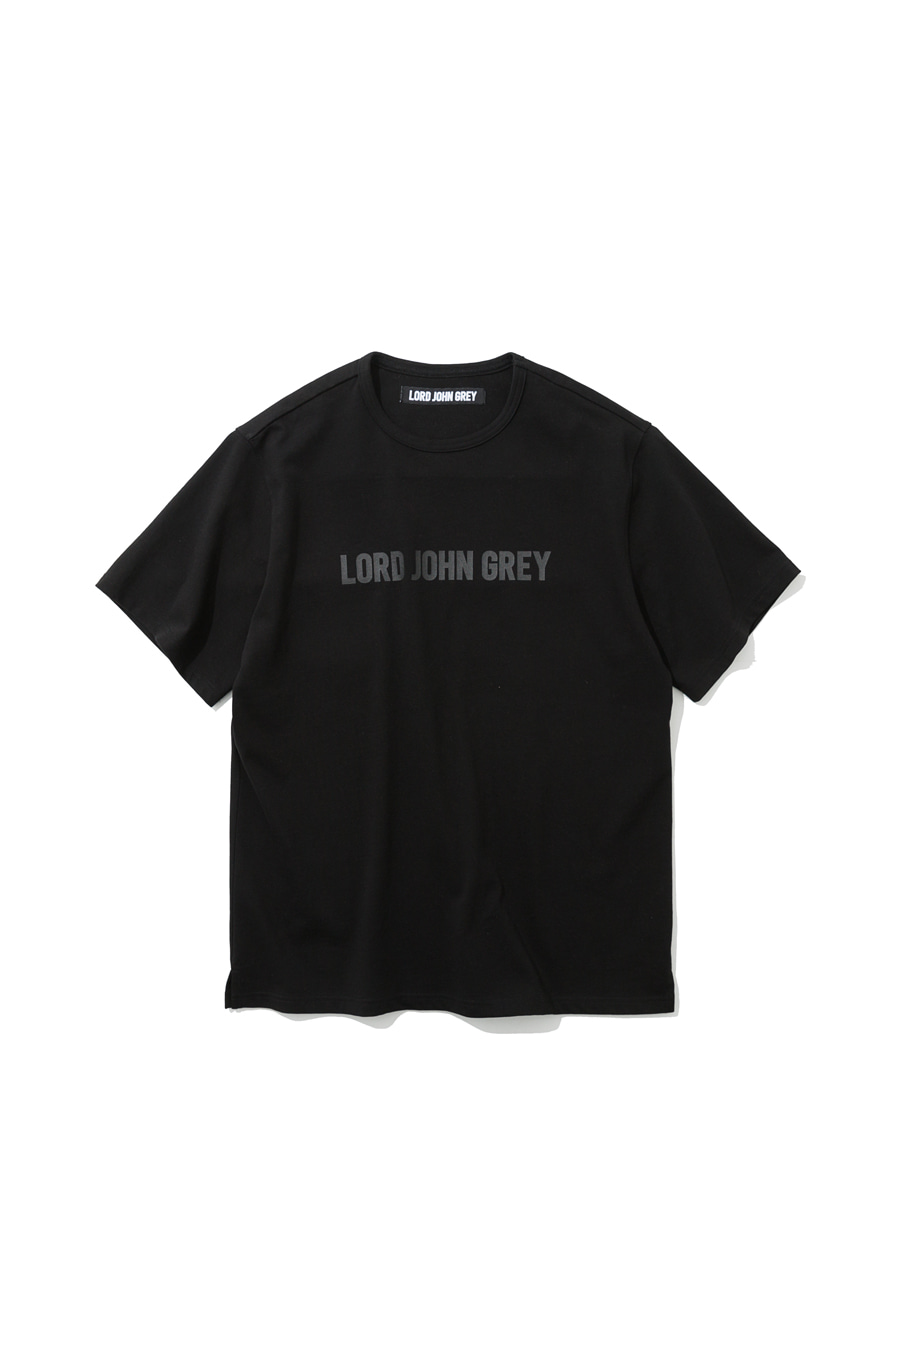 lord john grey